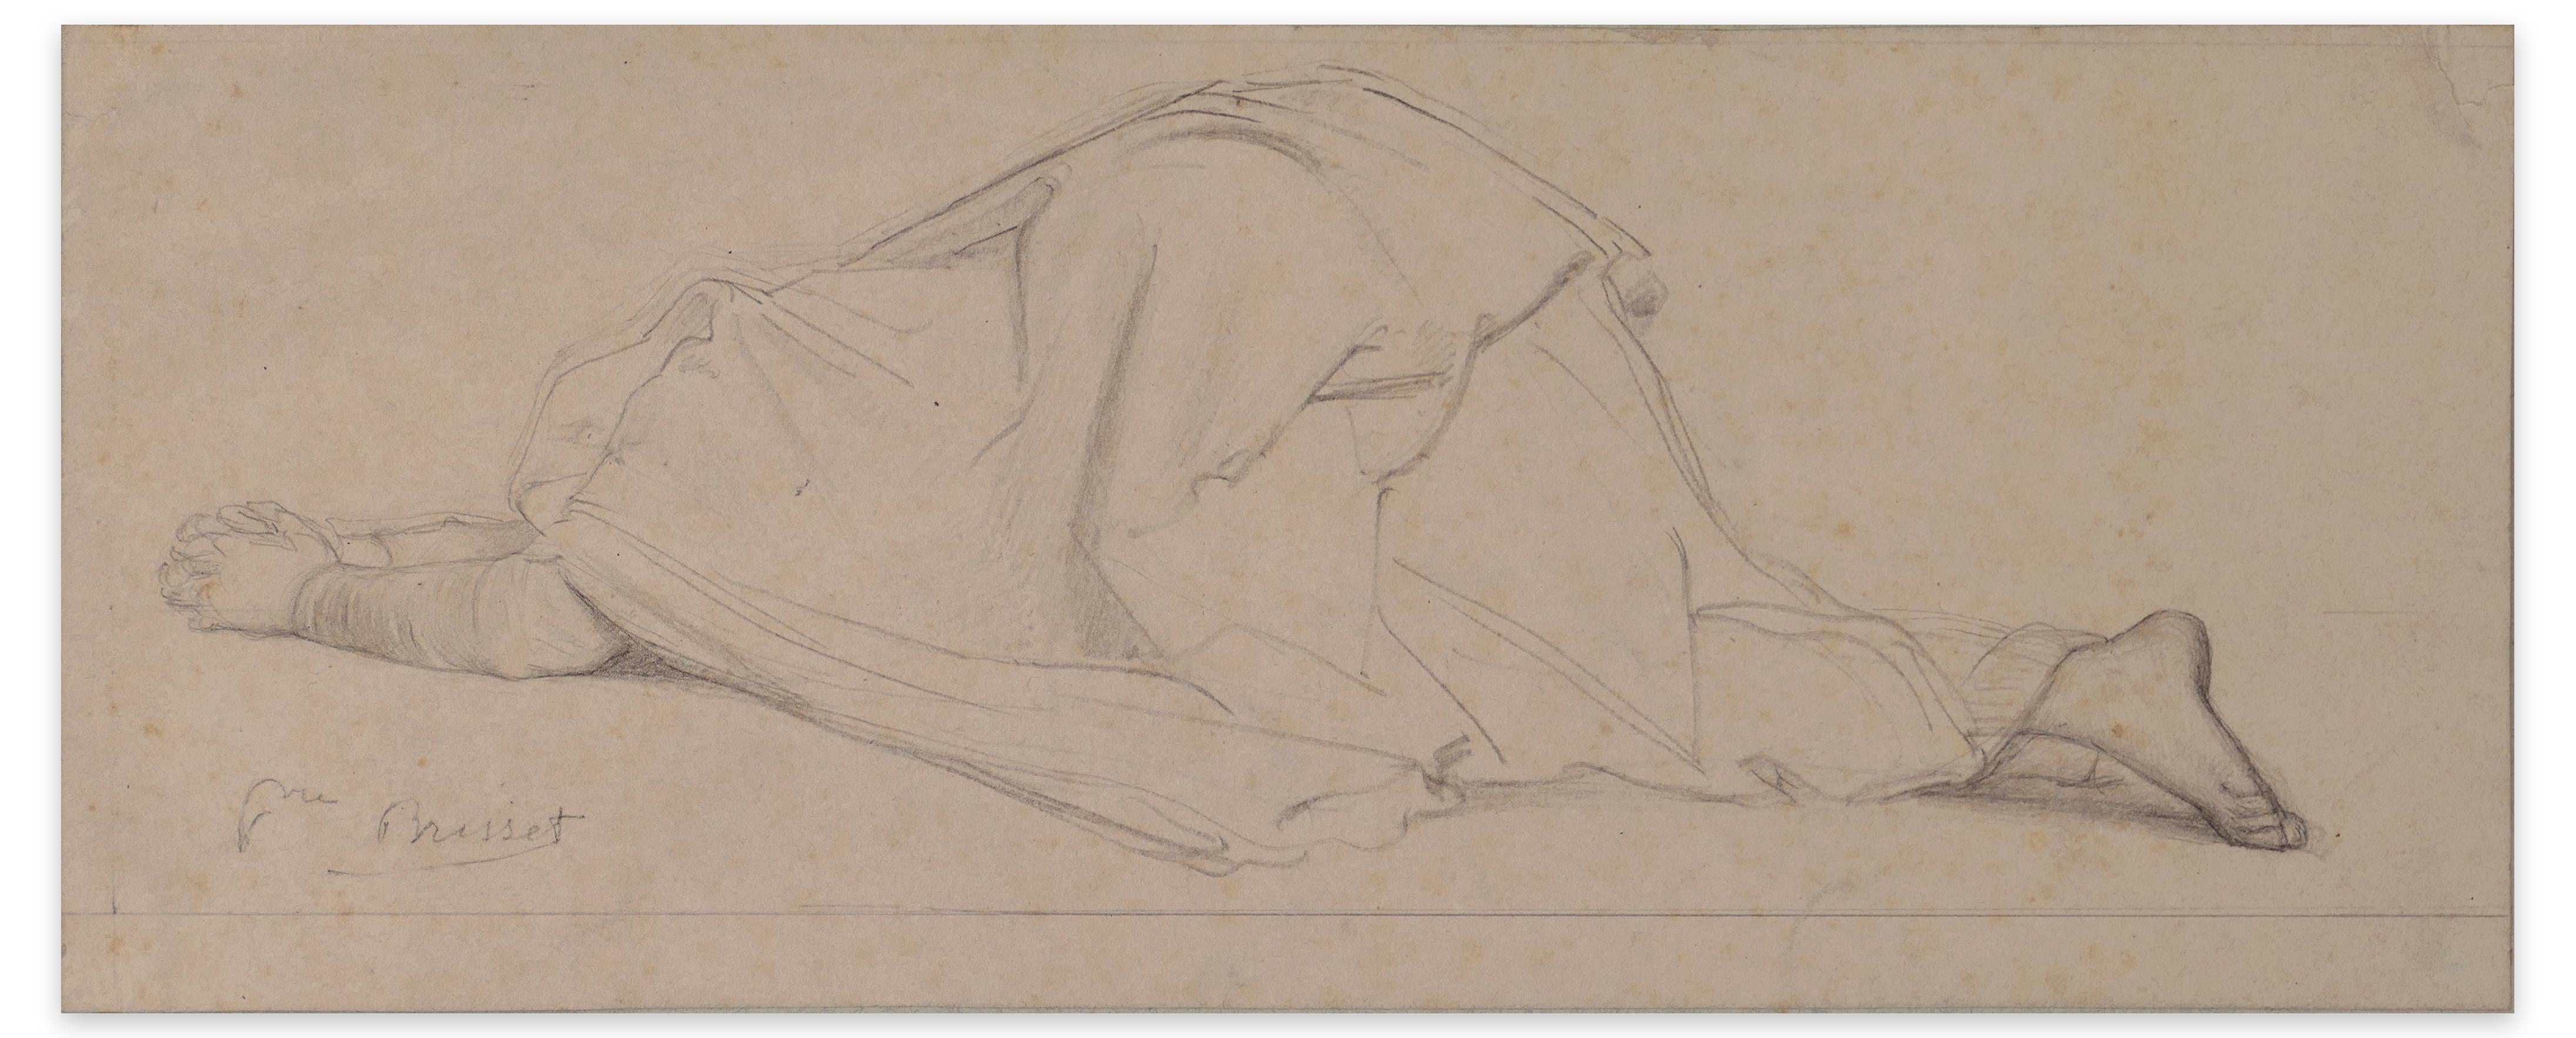 Pierre Nicolas Brisset Figurative Art – Praying Woman – Bleistiftzeichnung von P.N. Brisset – Ende 1800 